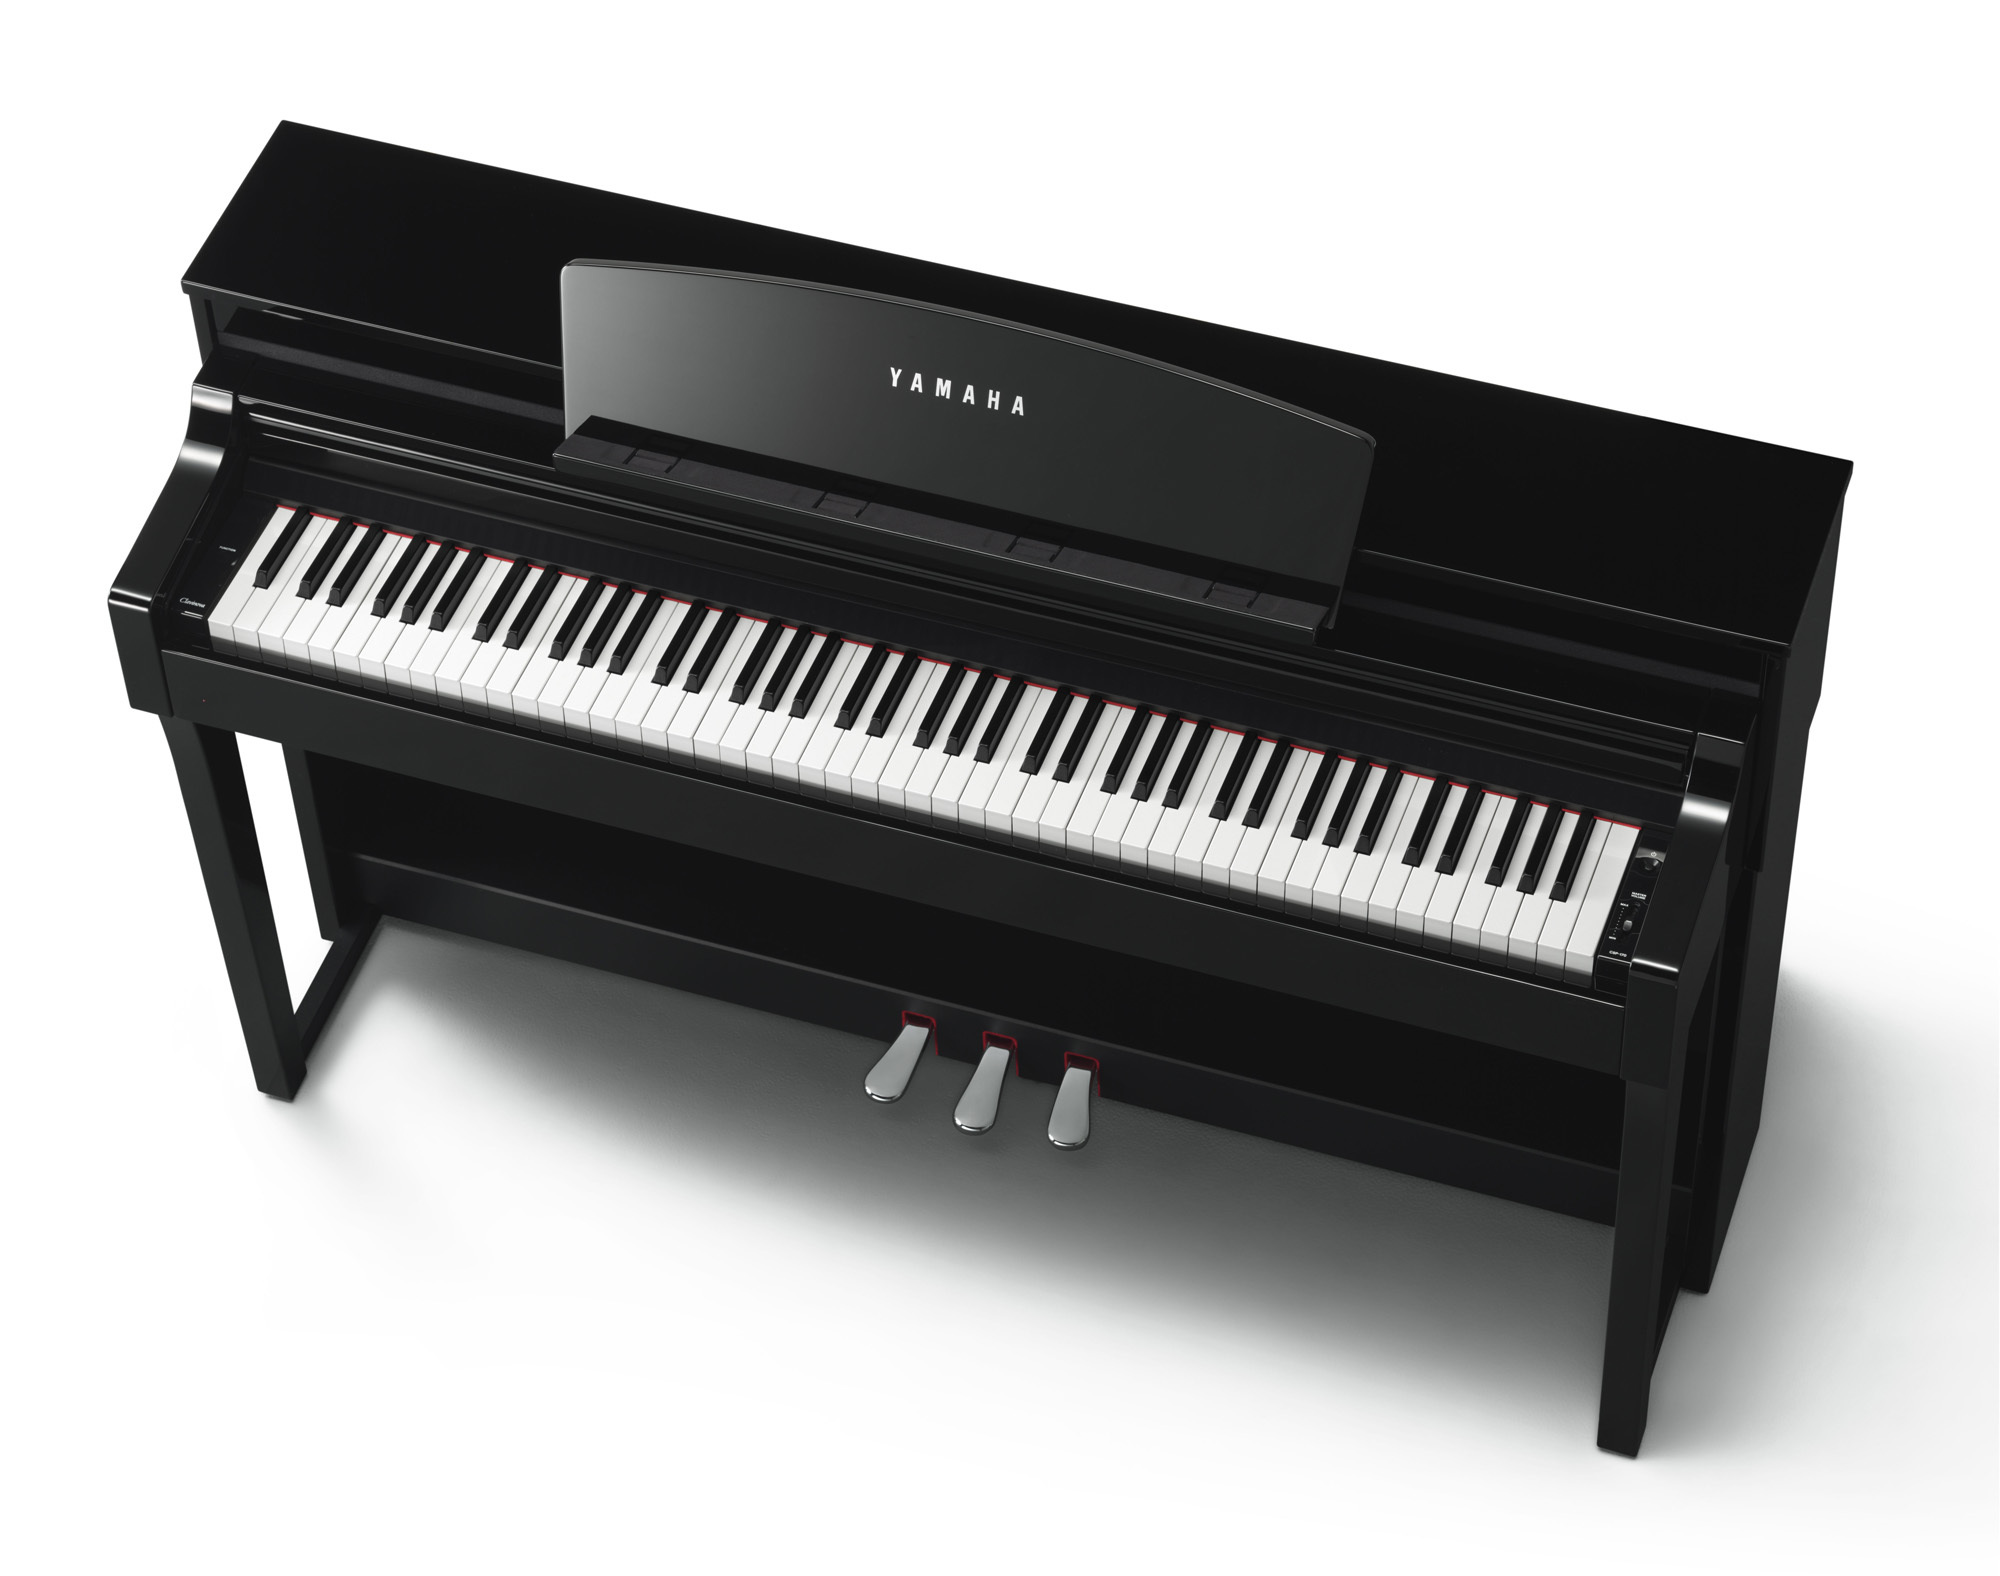 Đàn Piano Yamaha CSP-170 PE